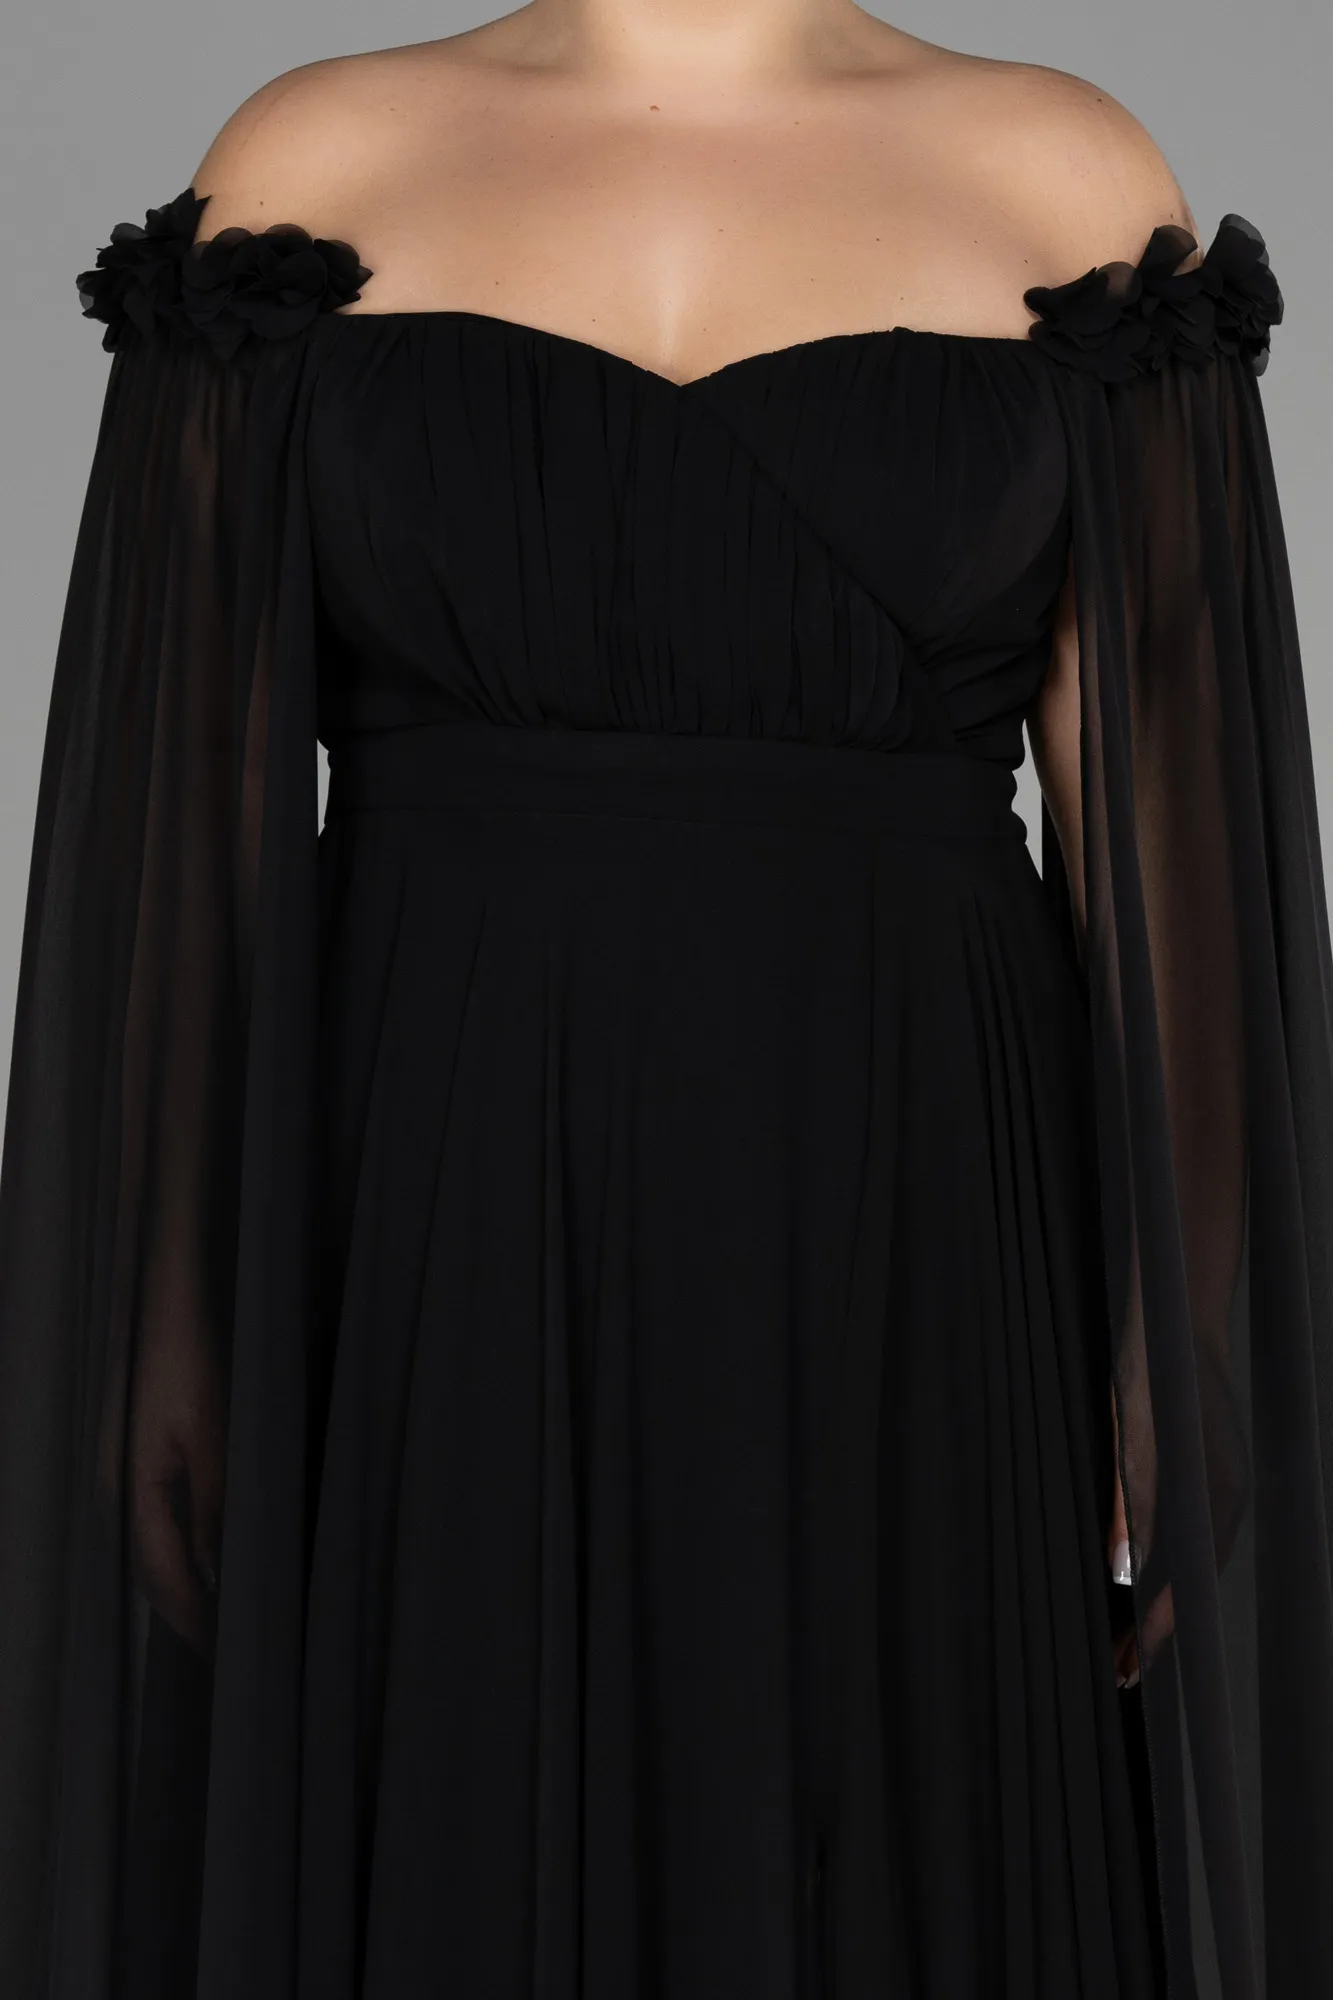 Black-Long Chiffon Plus Size Evening Dress ABU3464